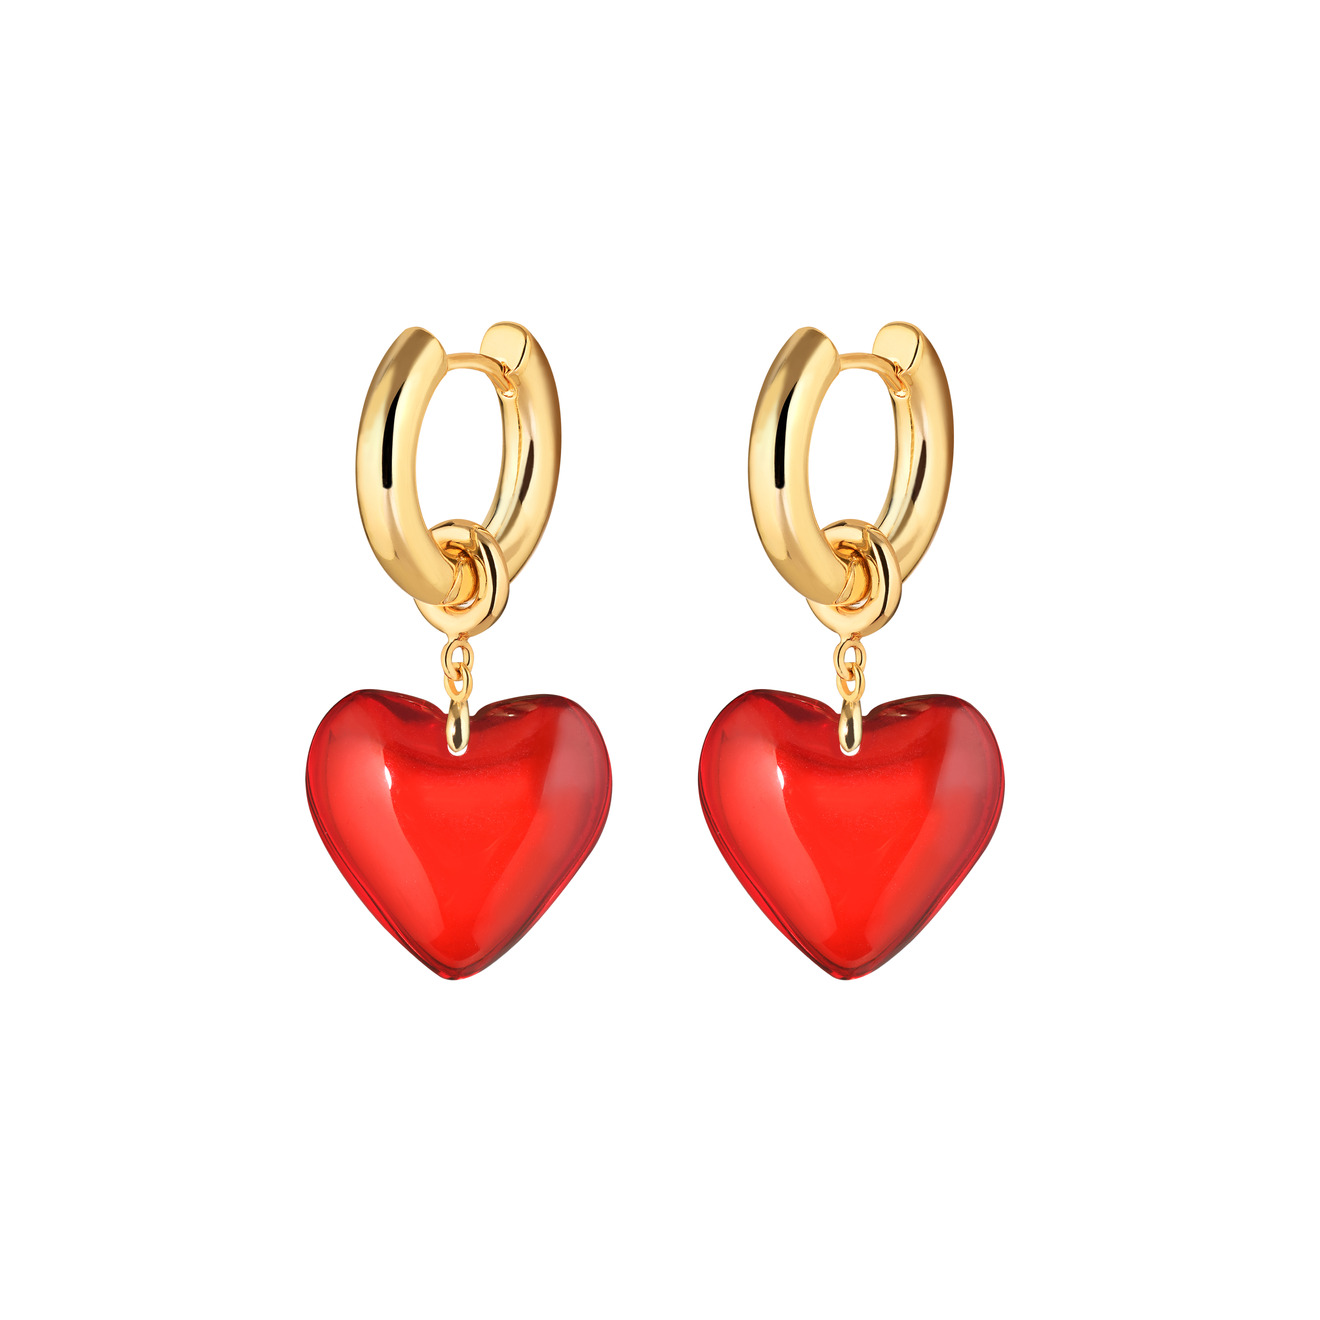 Kotlo Studio Золотистые серьги Sweetheart с красными сердцами aqua золотистые серьги с розовыми подвесками сердцами